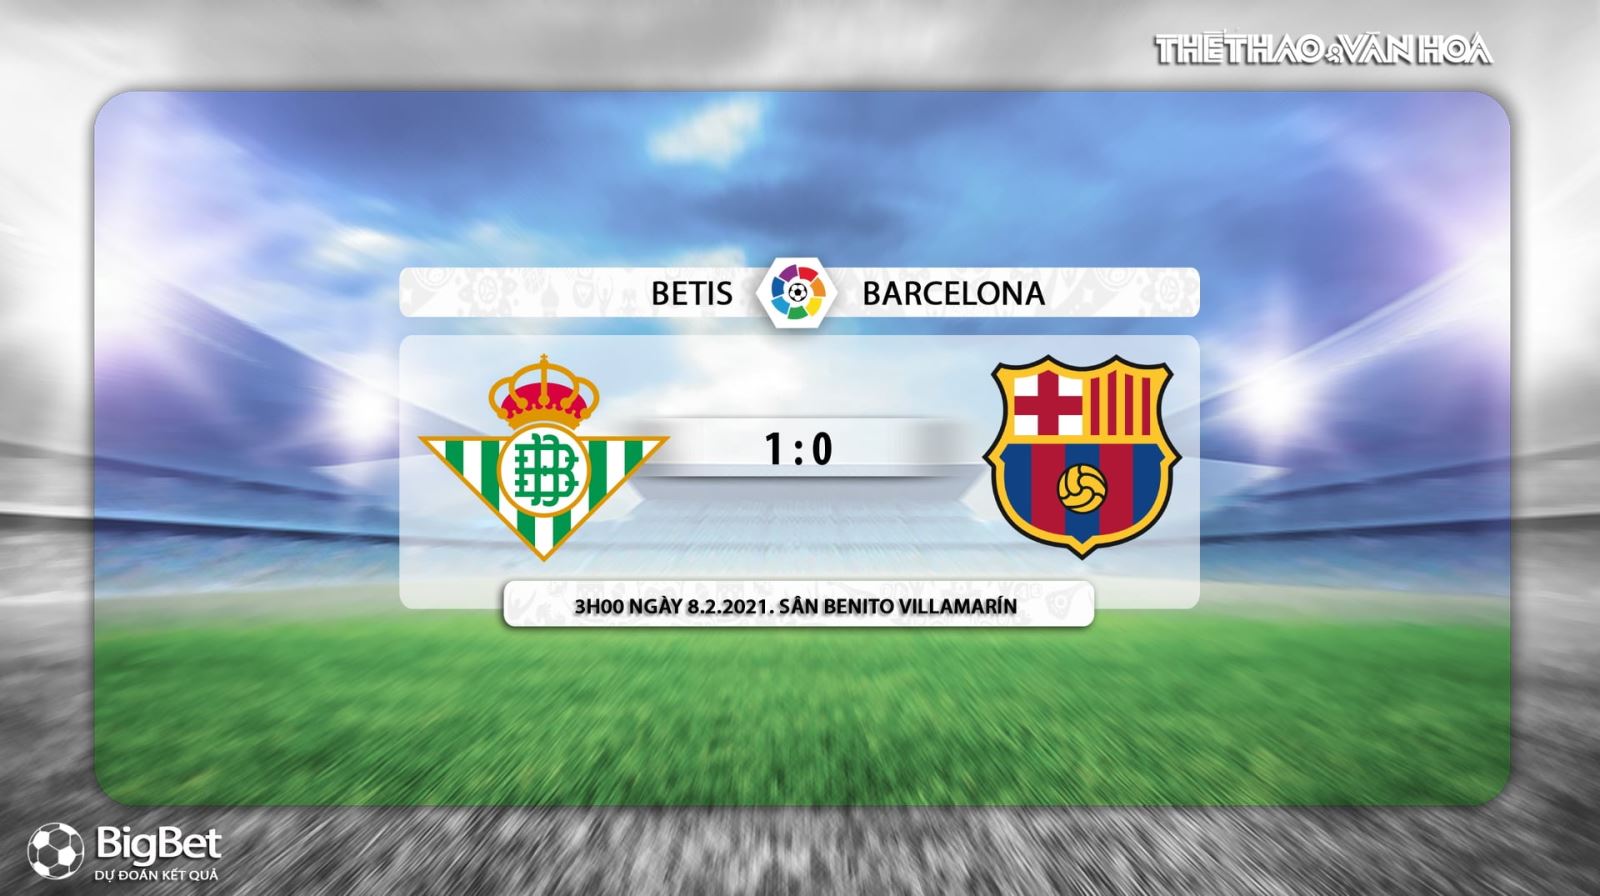 Keo nha cai, nhận định kết quả, Real Betis vs Barcelona, trực tiếp La Liga, Trực tiếp BĐTV, Trực tiếp bóng đá, Trực tiếp Barcelona đấu với Real Betis, Kèo bóng đá Betis Barca